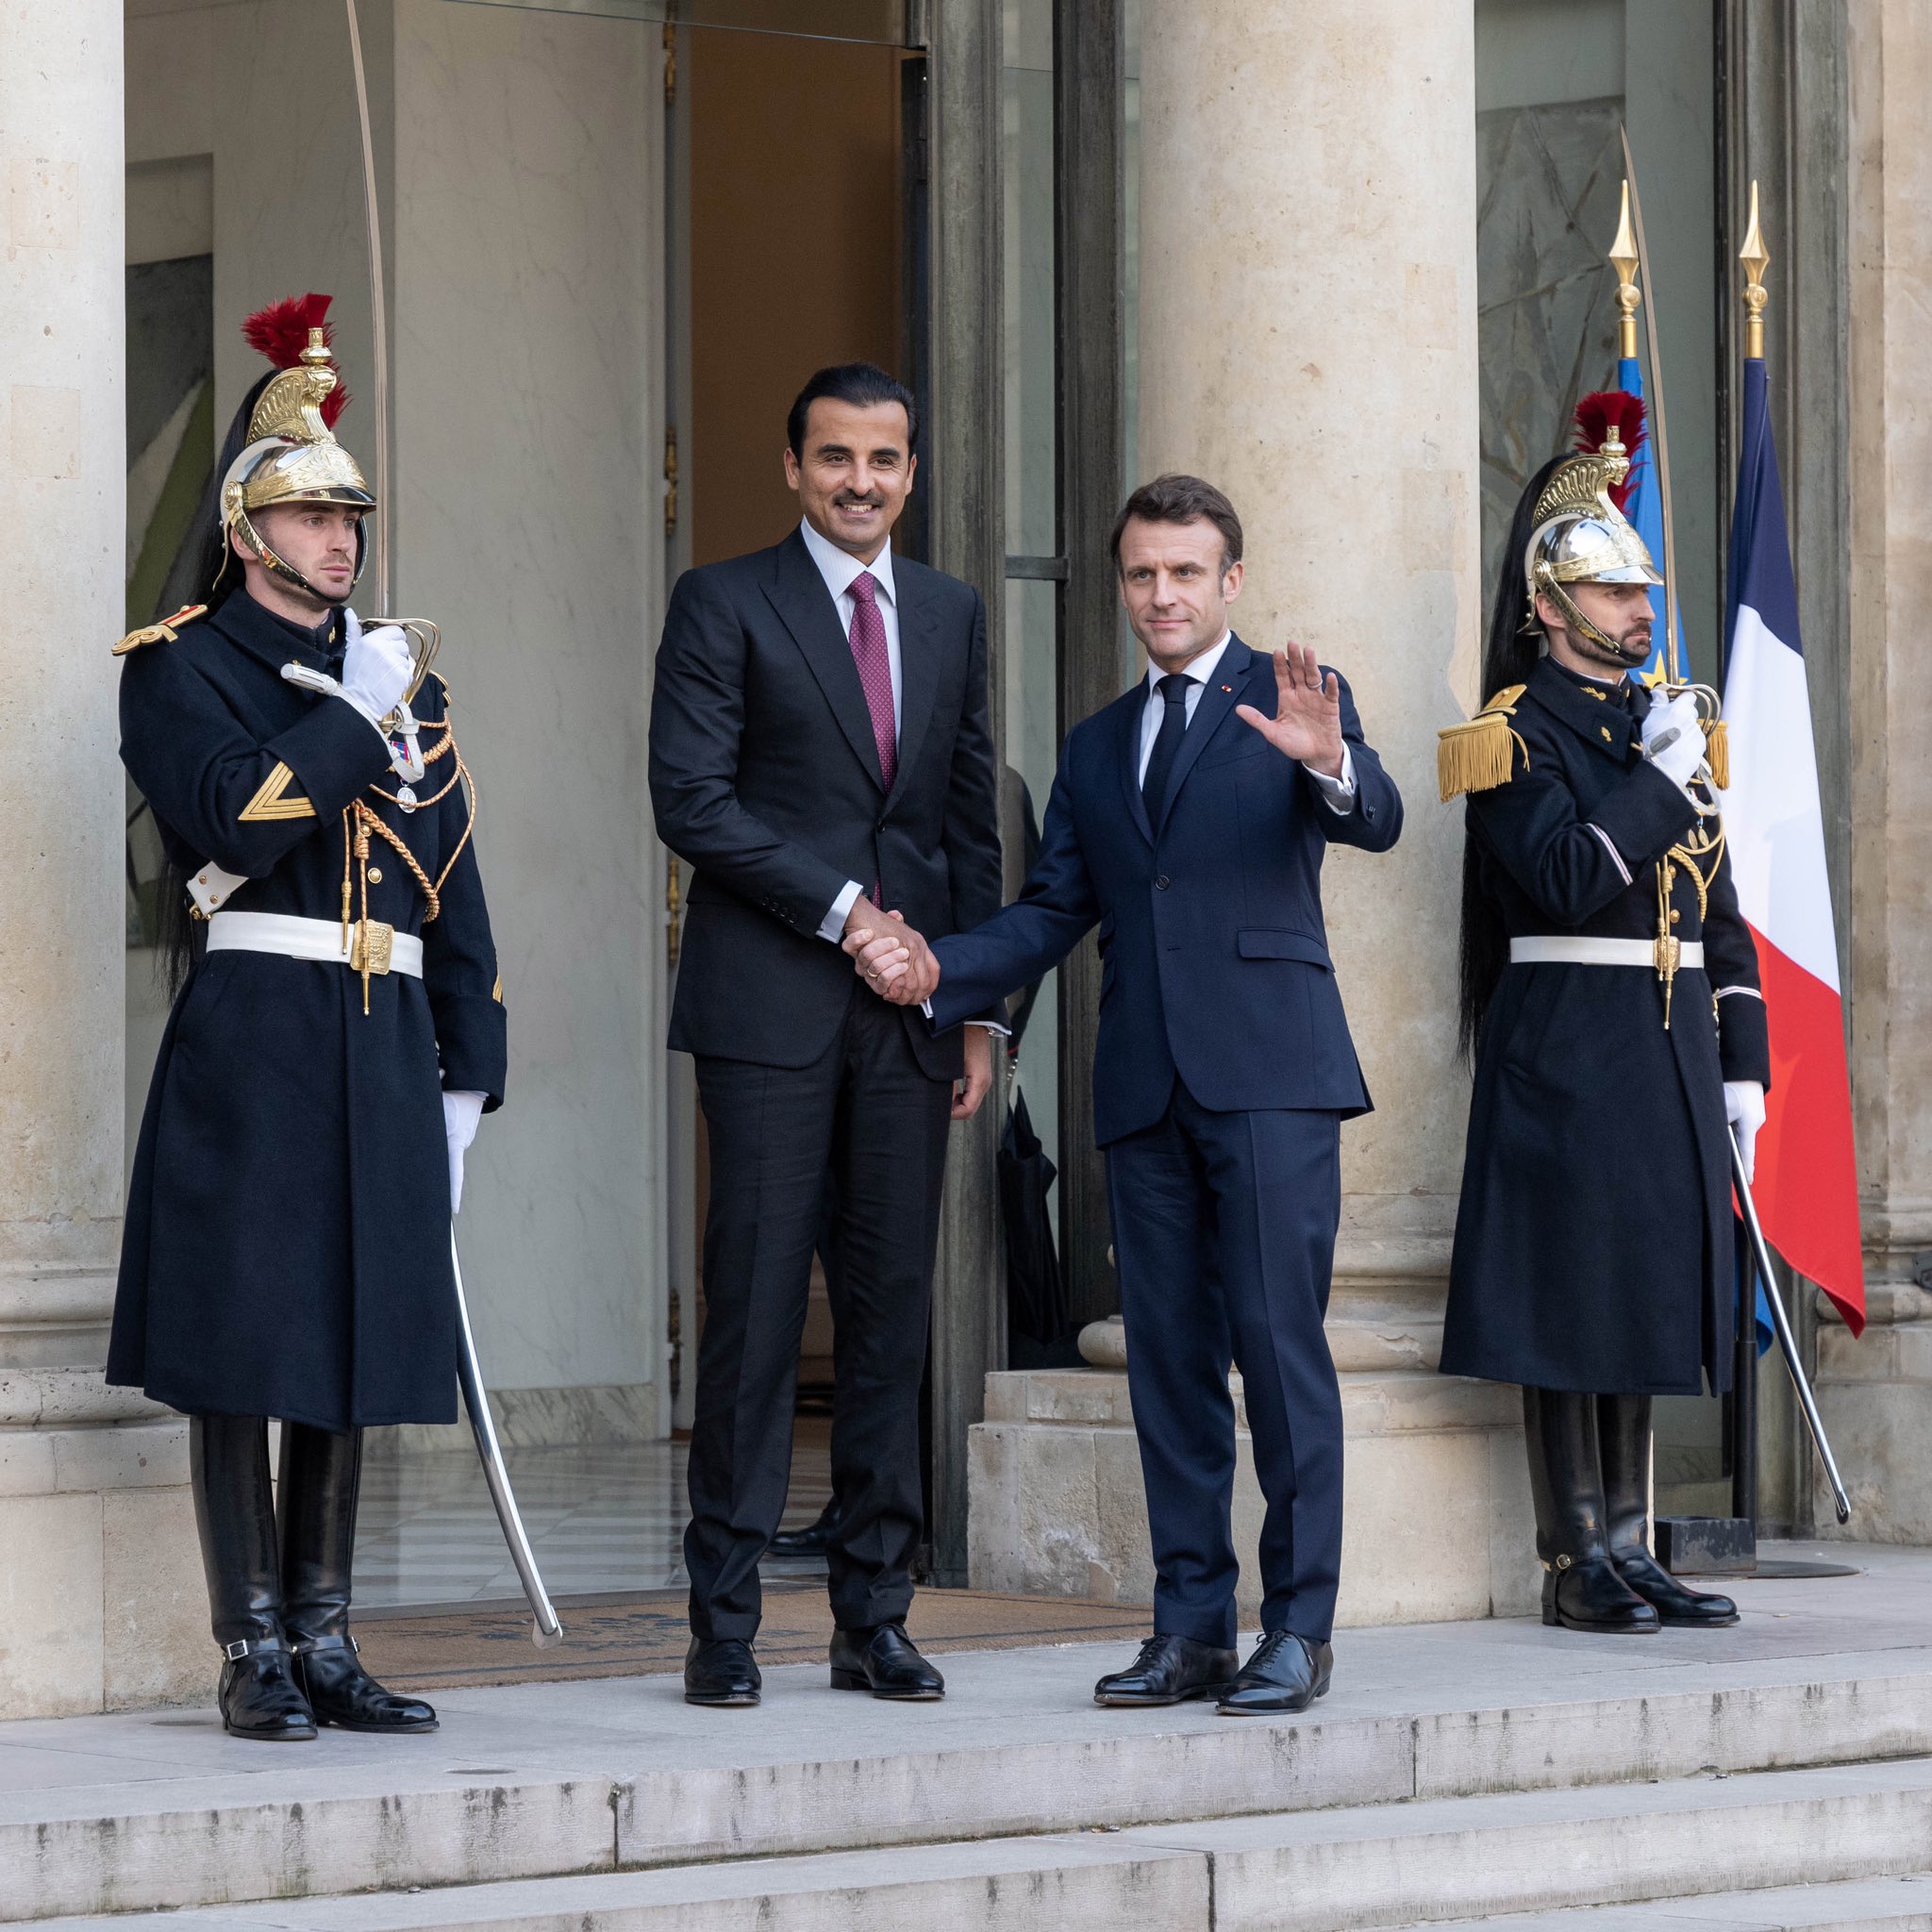  لقاء ثنائي عقد بين الطرفين في قصر الإليزيه بالعاصمة الفرنسية باريس (الديوان الأميري القطري)